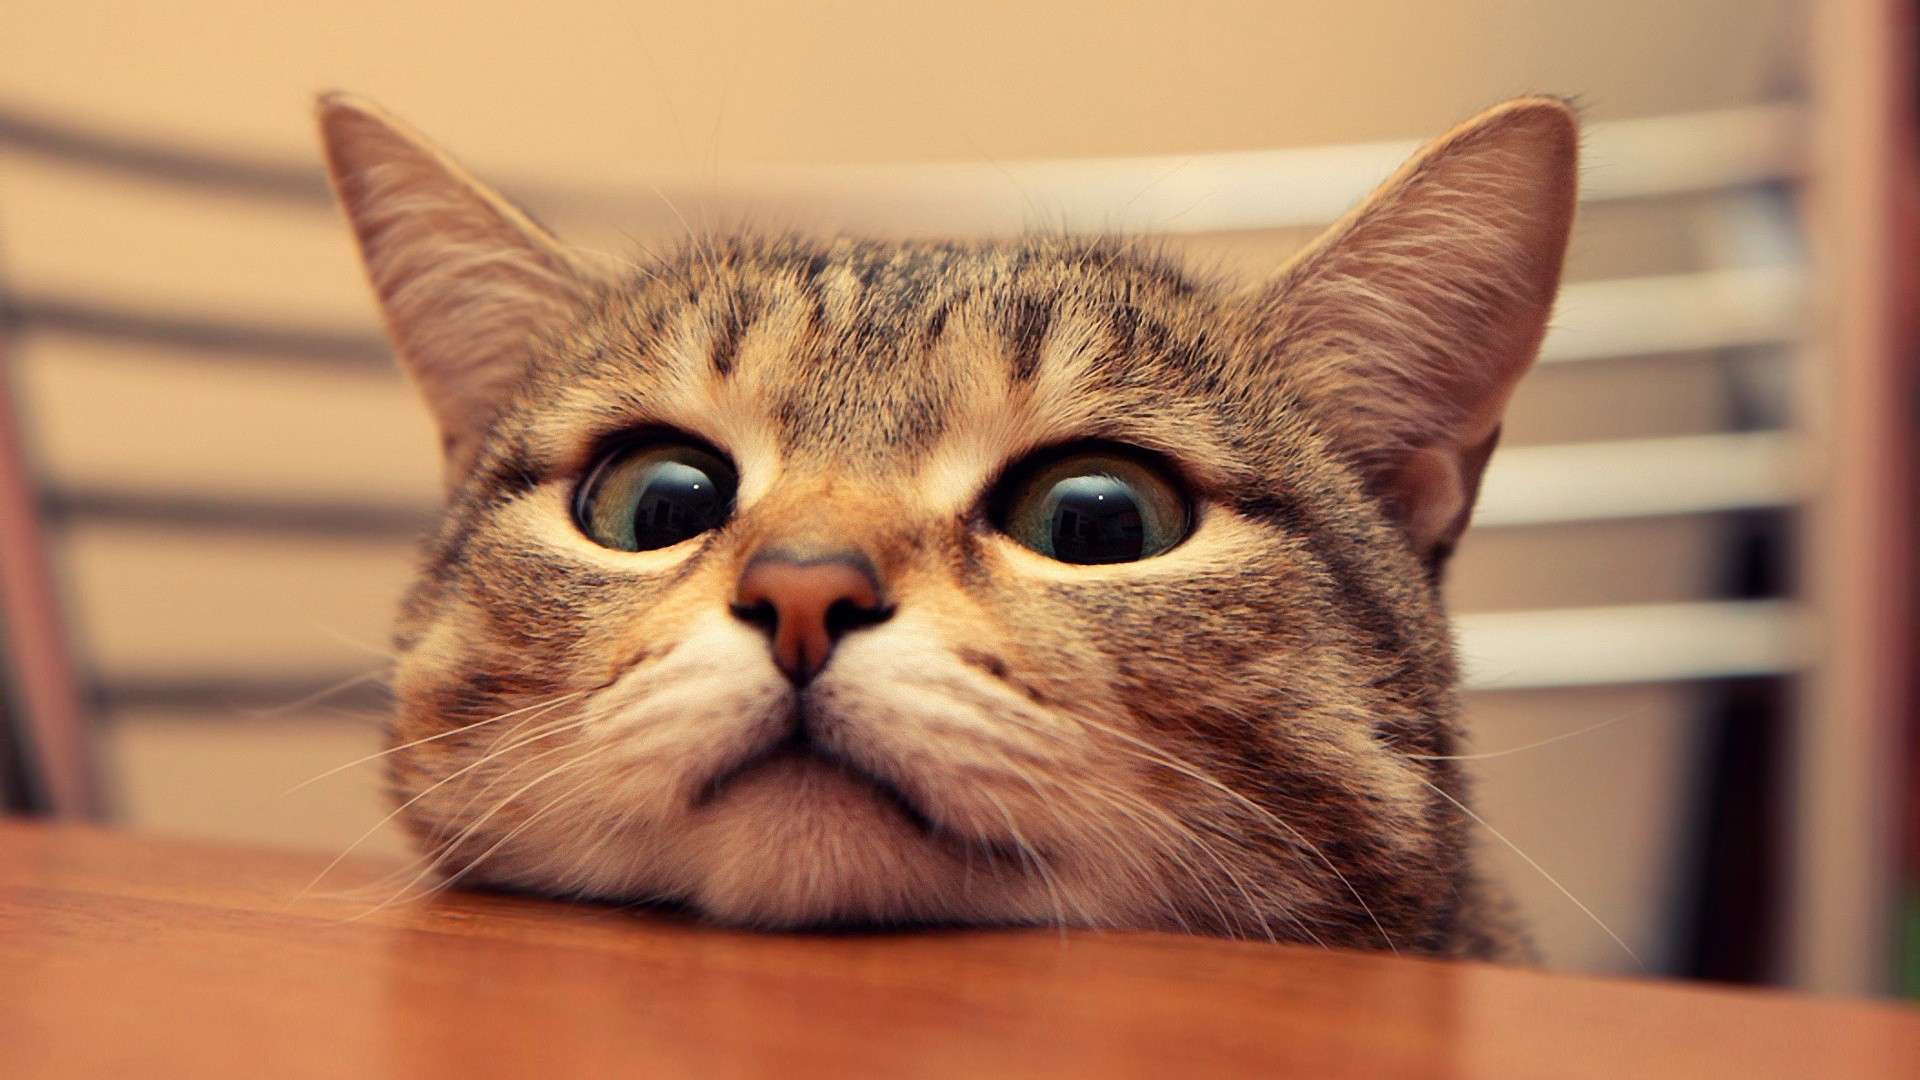 Tumblr Cute Cat Desktop Wallpaper Free Tumblr Cute Cat